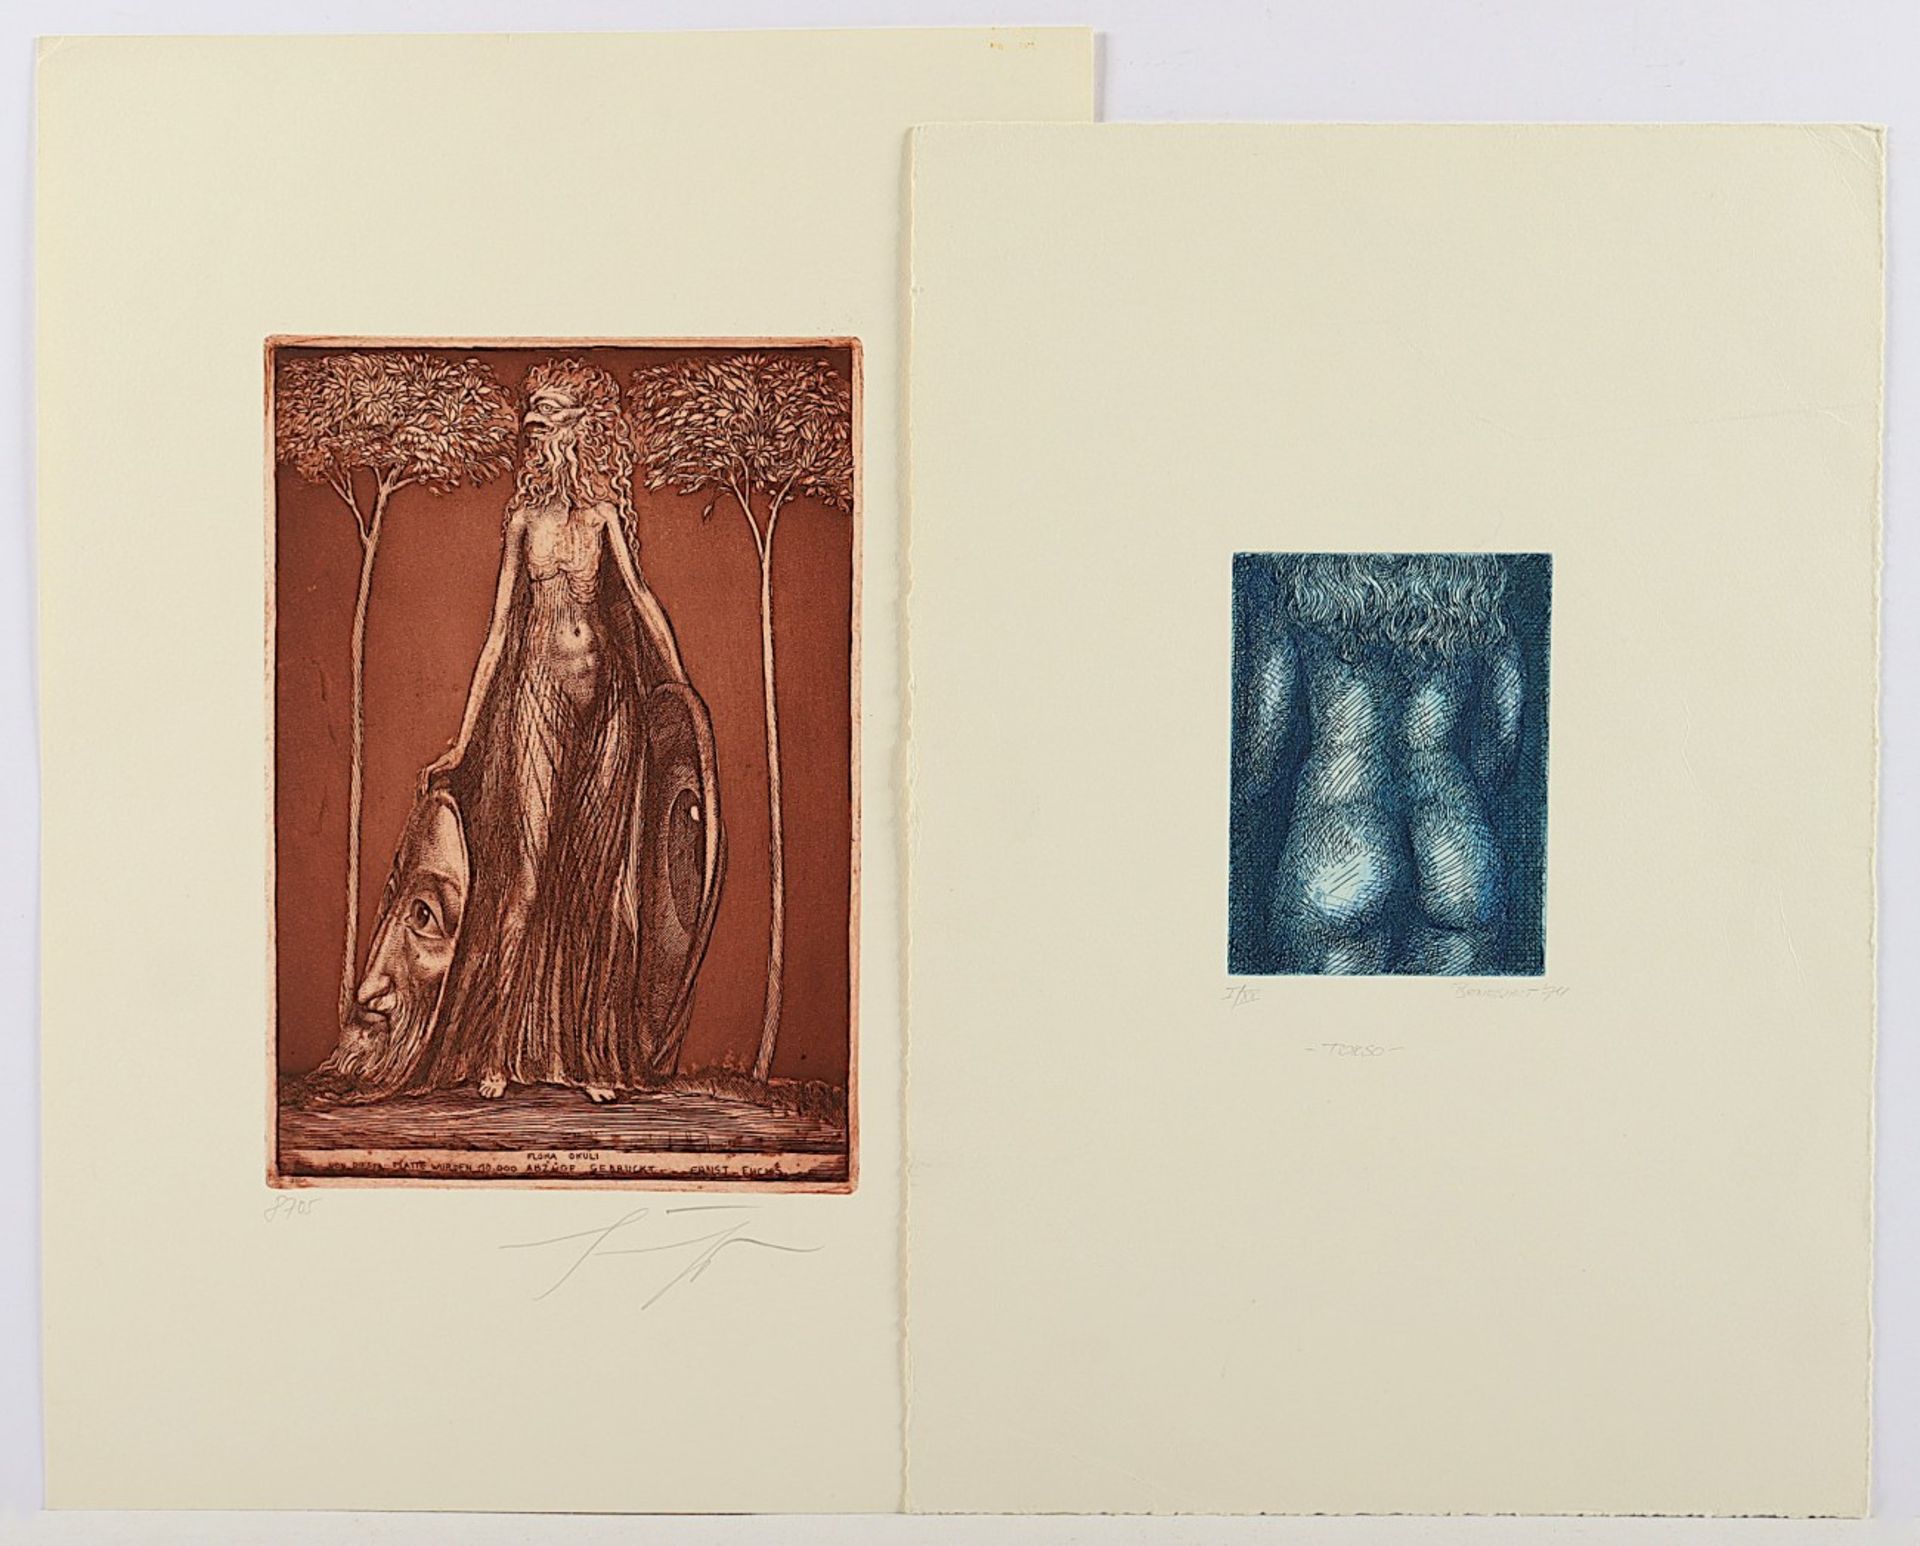 FUCHS, Ernst, "Flora okuli", Farbradierung, 24 x 17, handsigniert, beigegeben eine weitere Radierun - Image 2 of 2